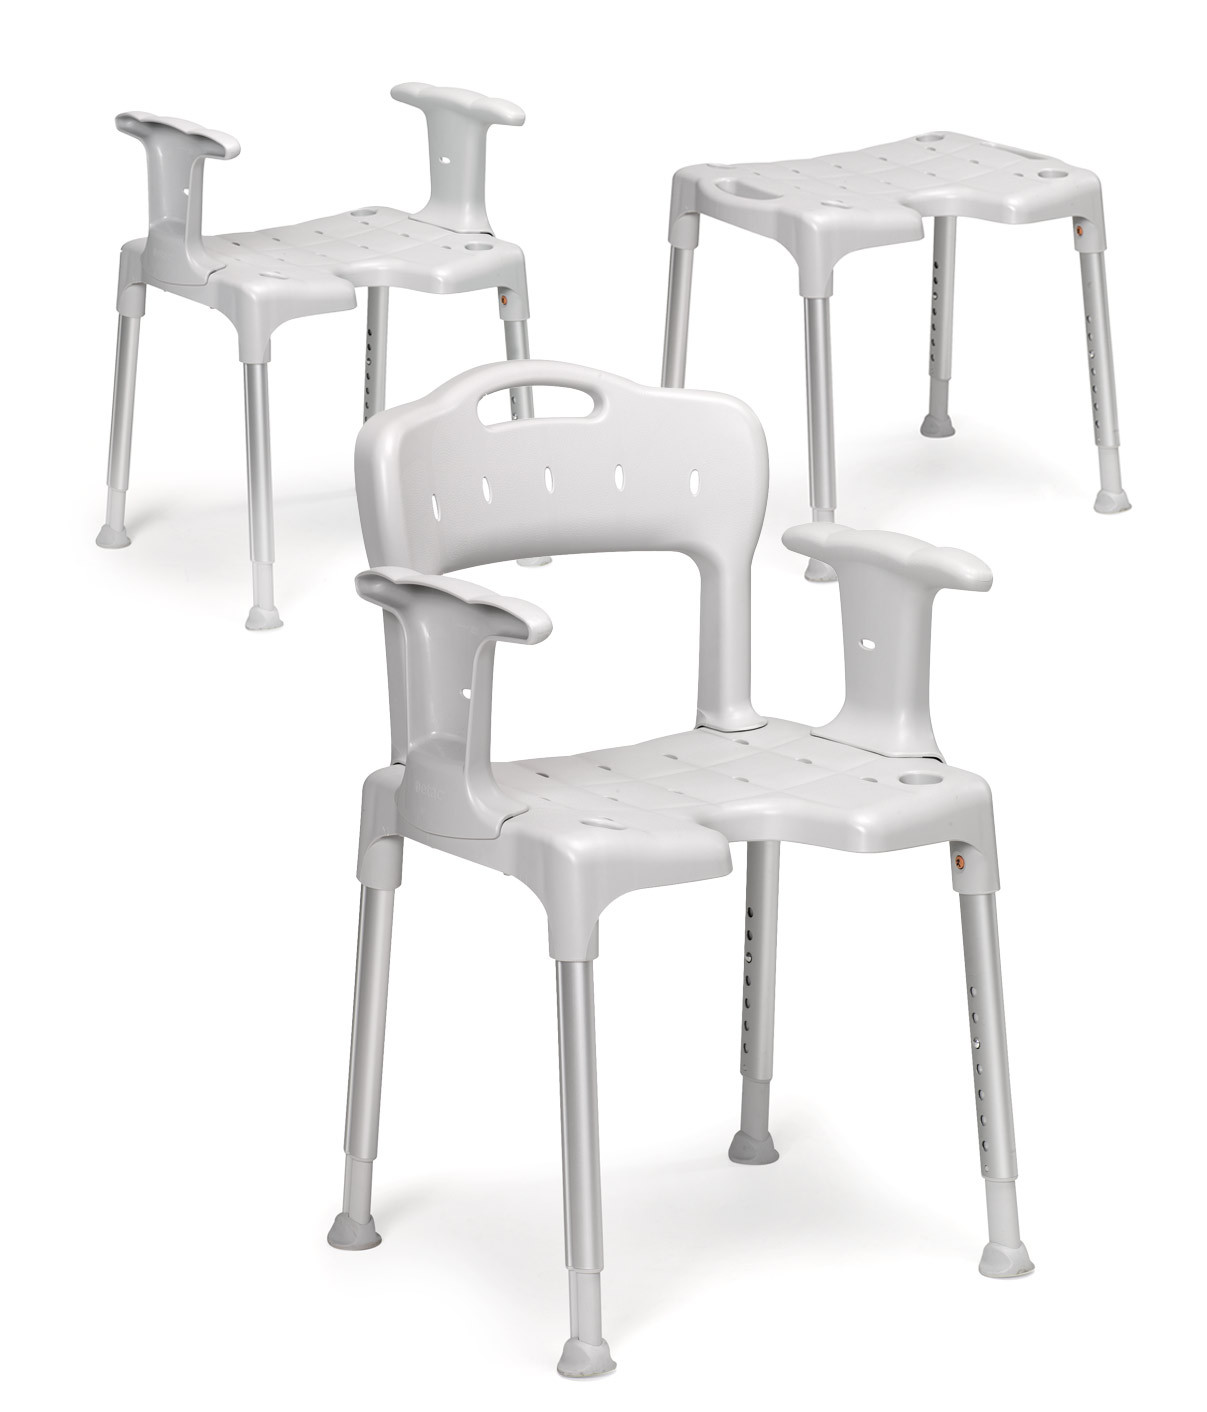 Taburete completo (silla) Etac Swift color gris, con respaldo y apoyabrazos